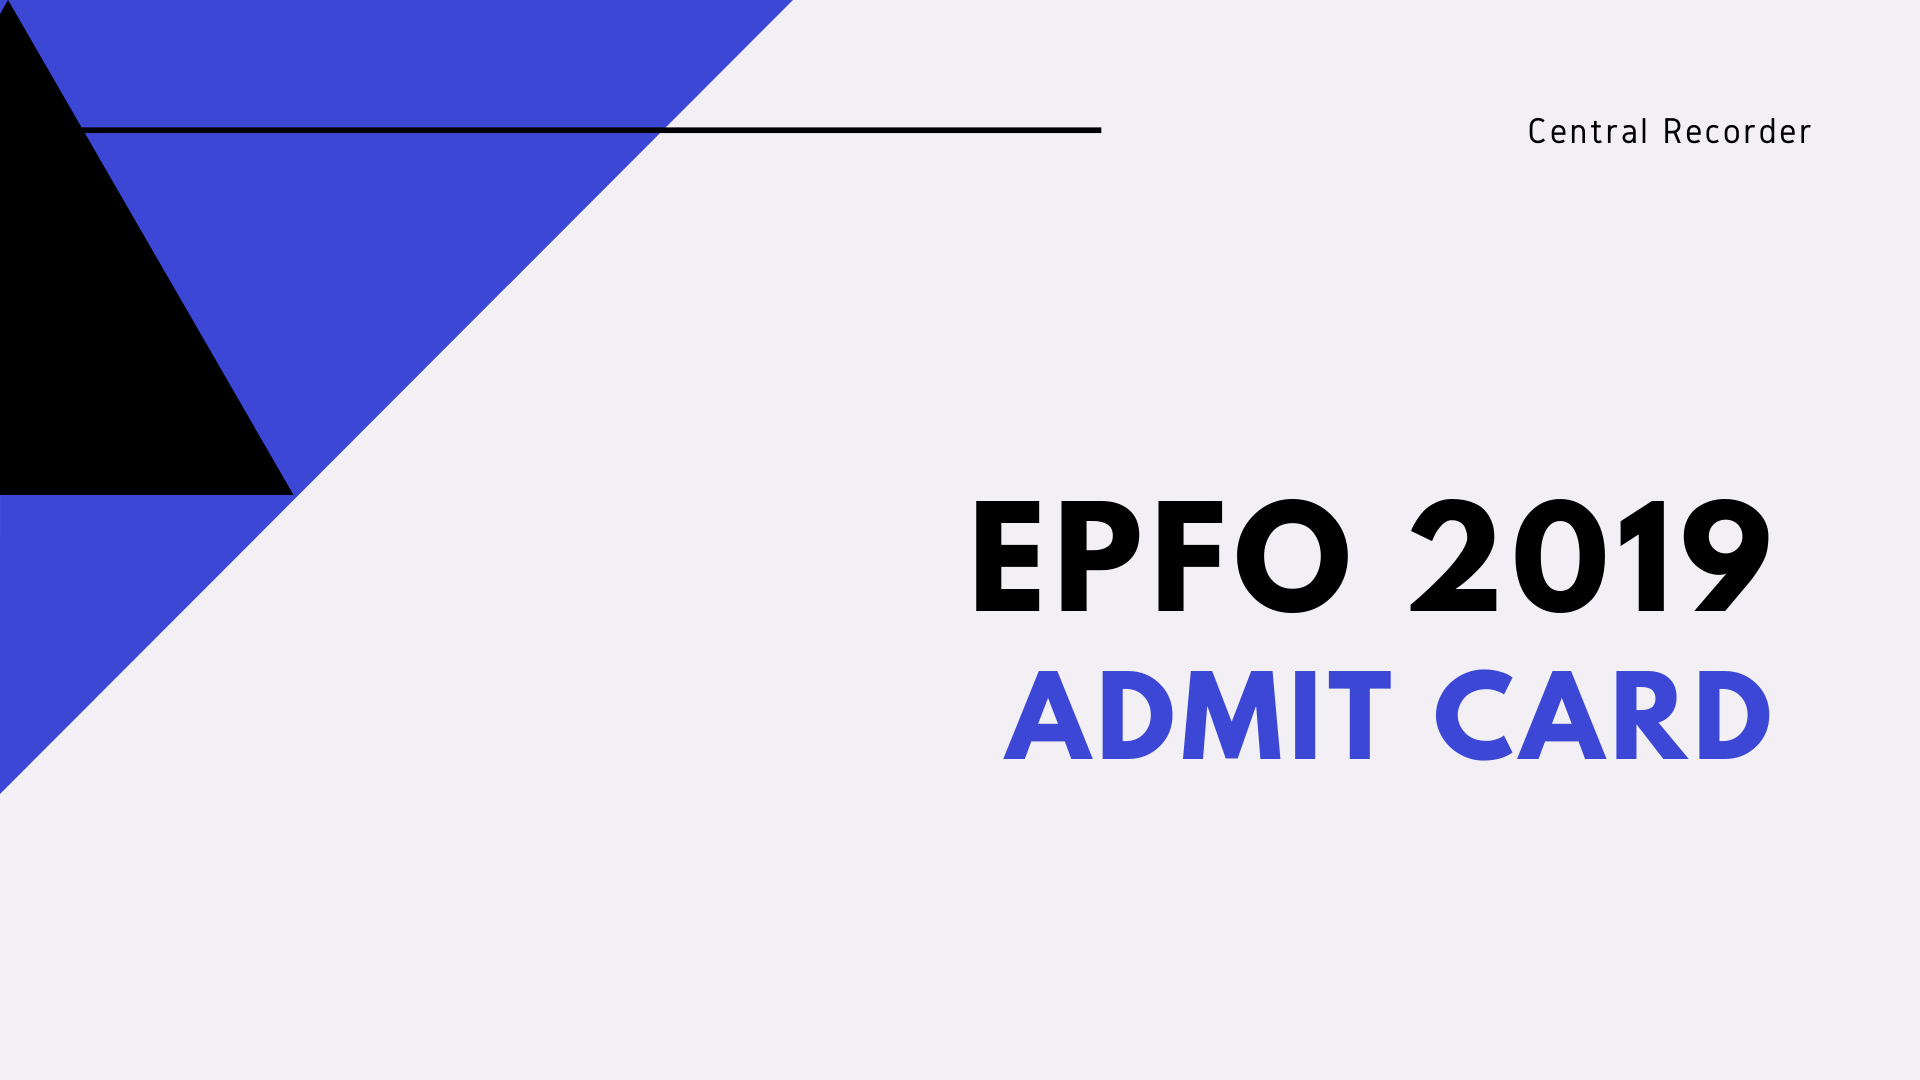 EPFO 2019